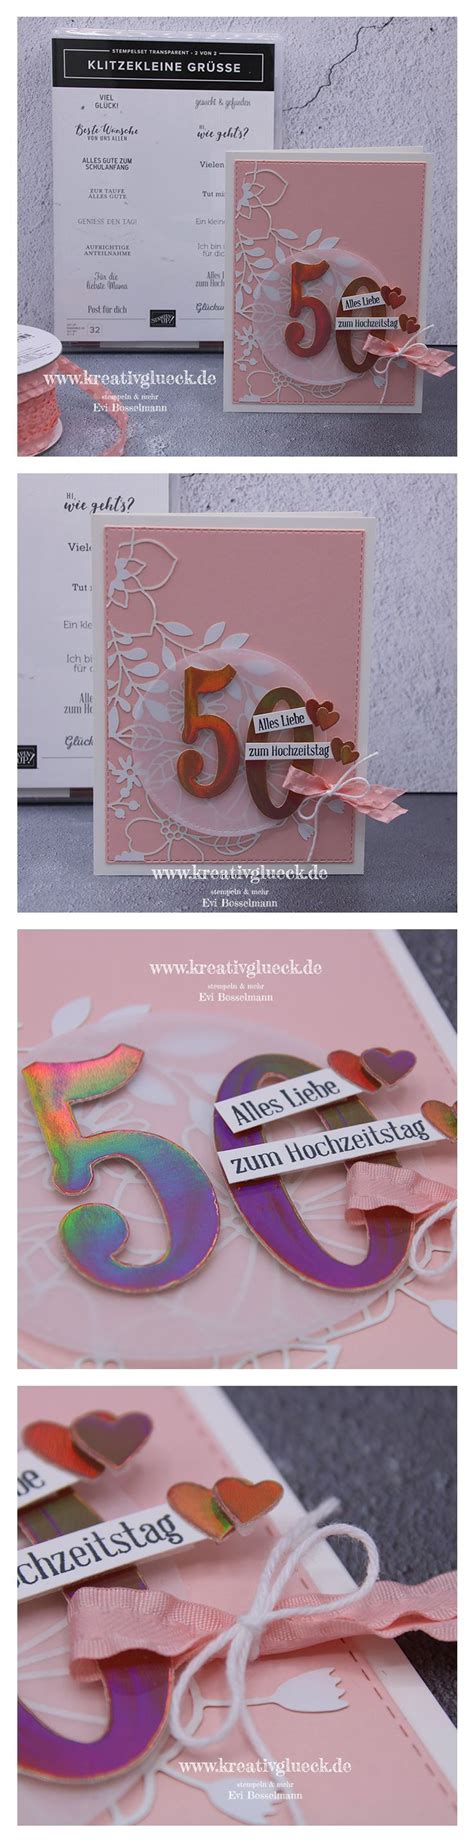 Hochzeitstag feierten franz und adelheid pfemeter aus kleinneusiedl. Glückwunschkarte zum 50. Hochzeitstag - kreativglueck.de ...